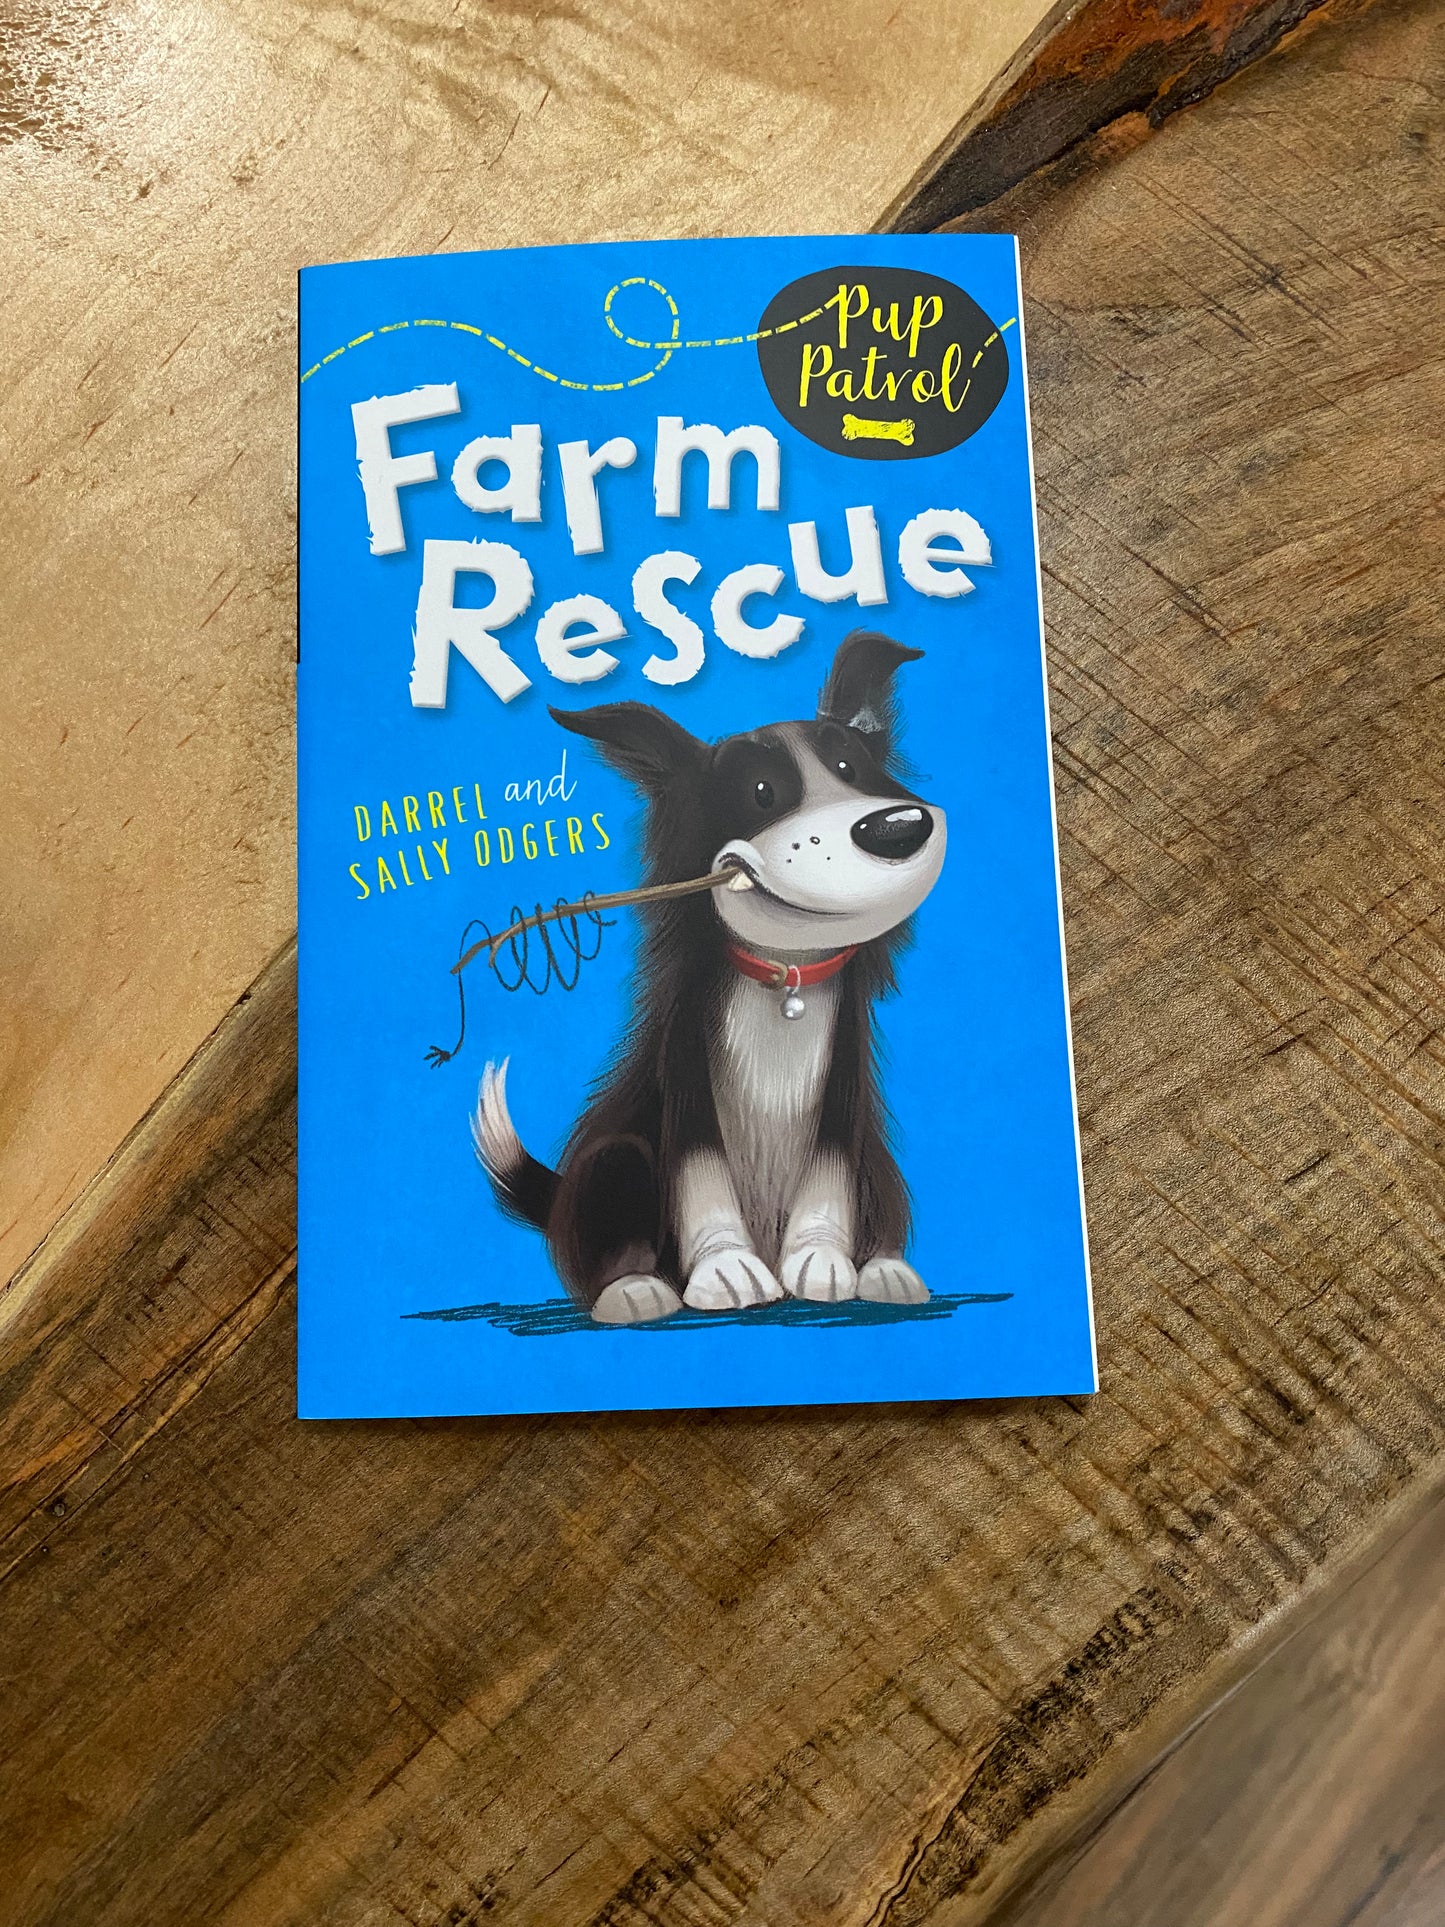 Farm rescue